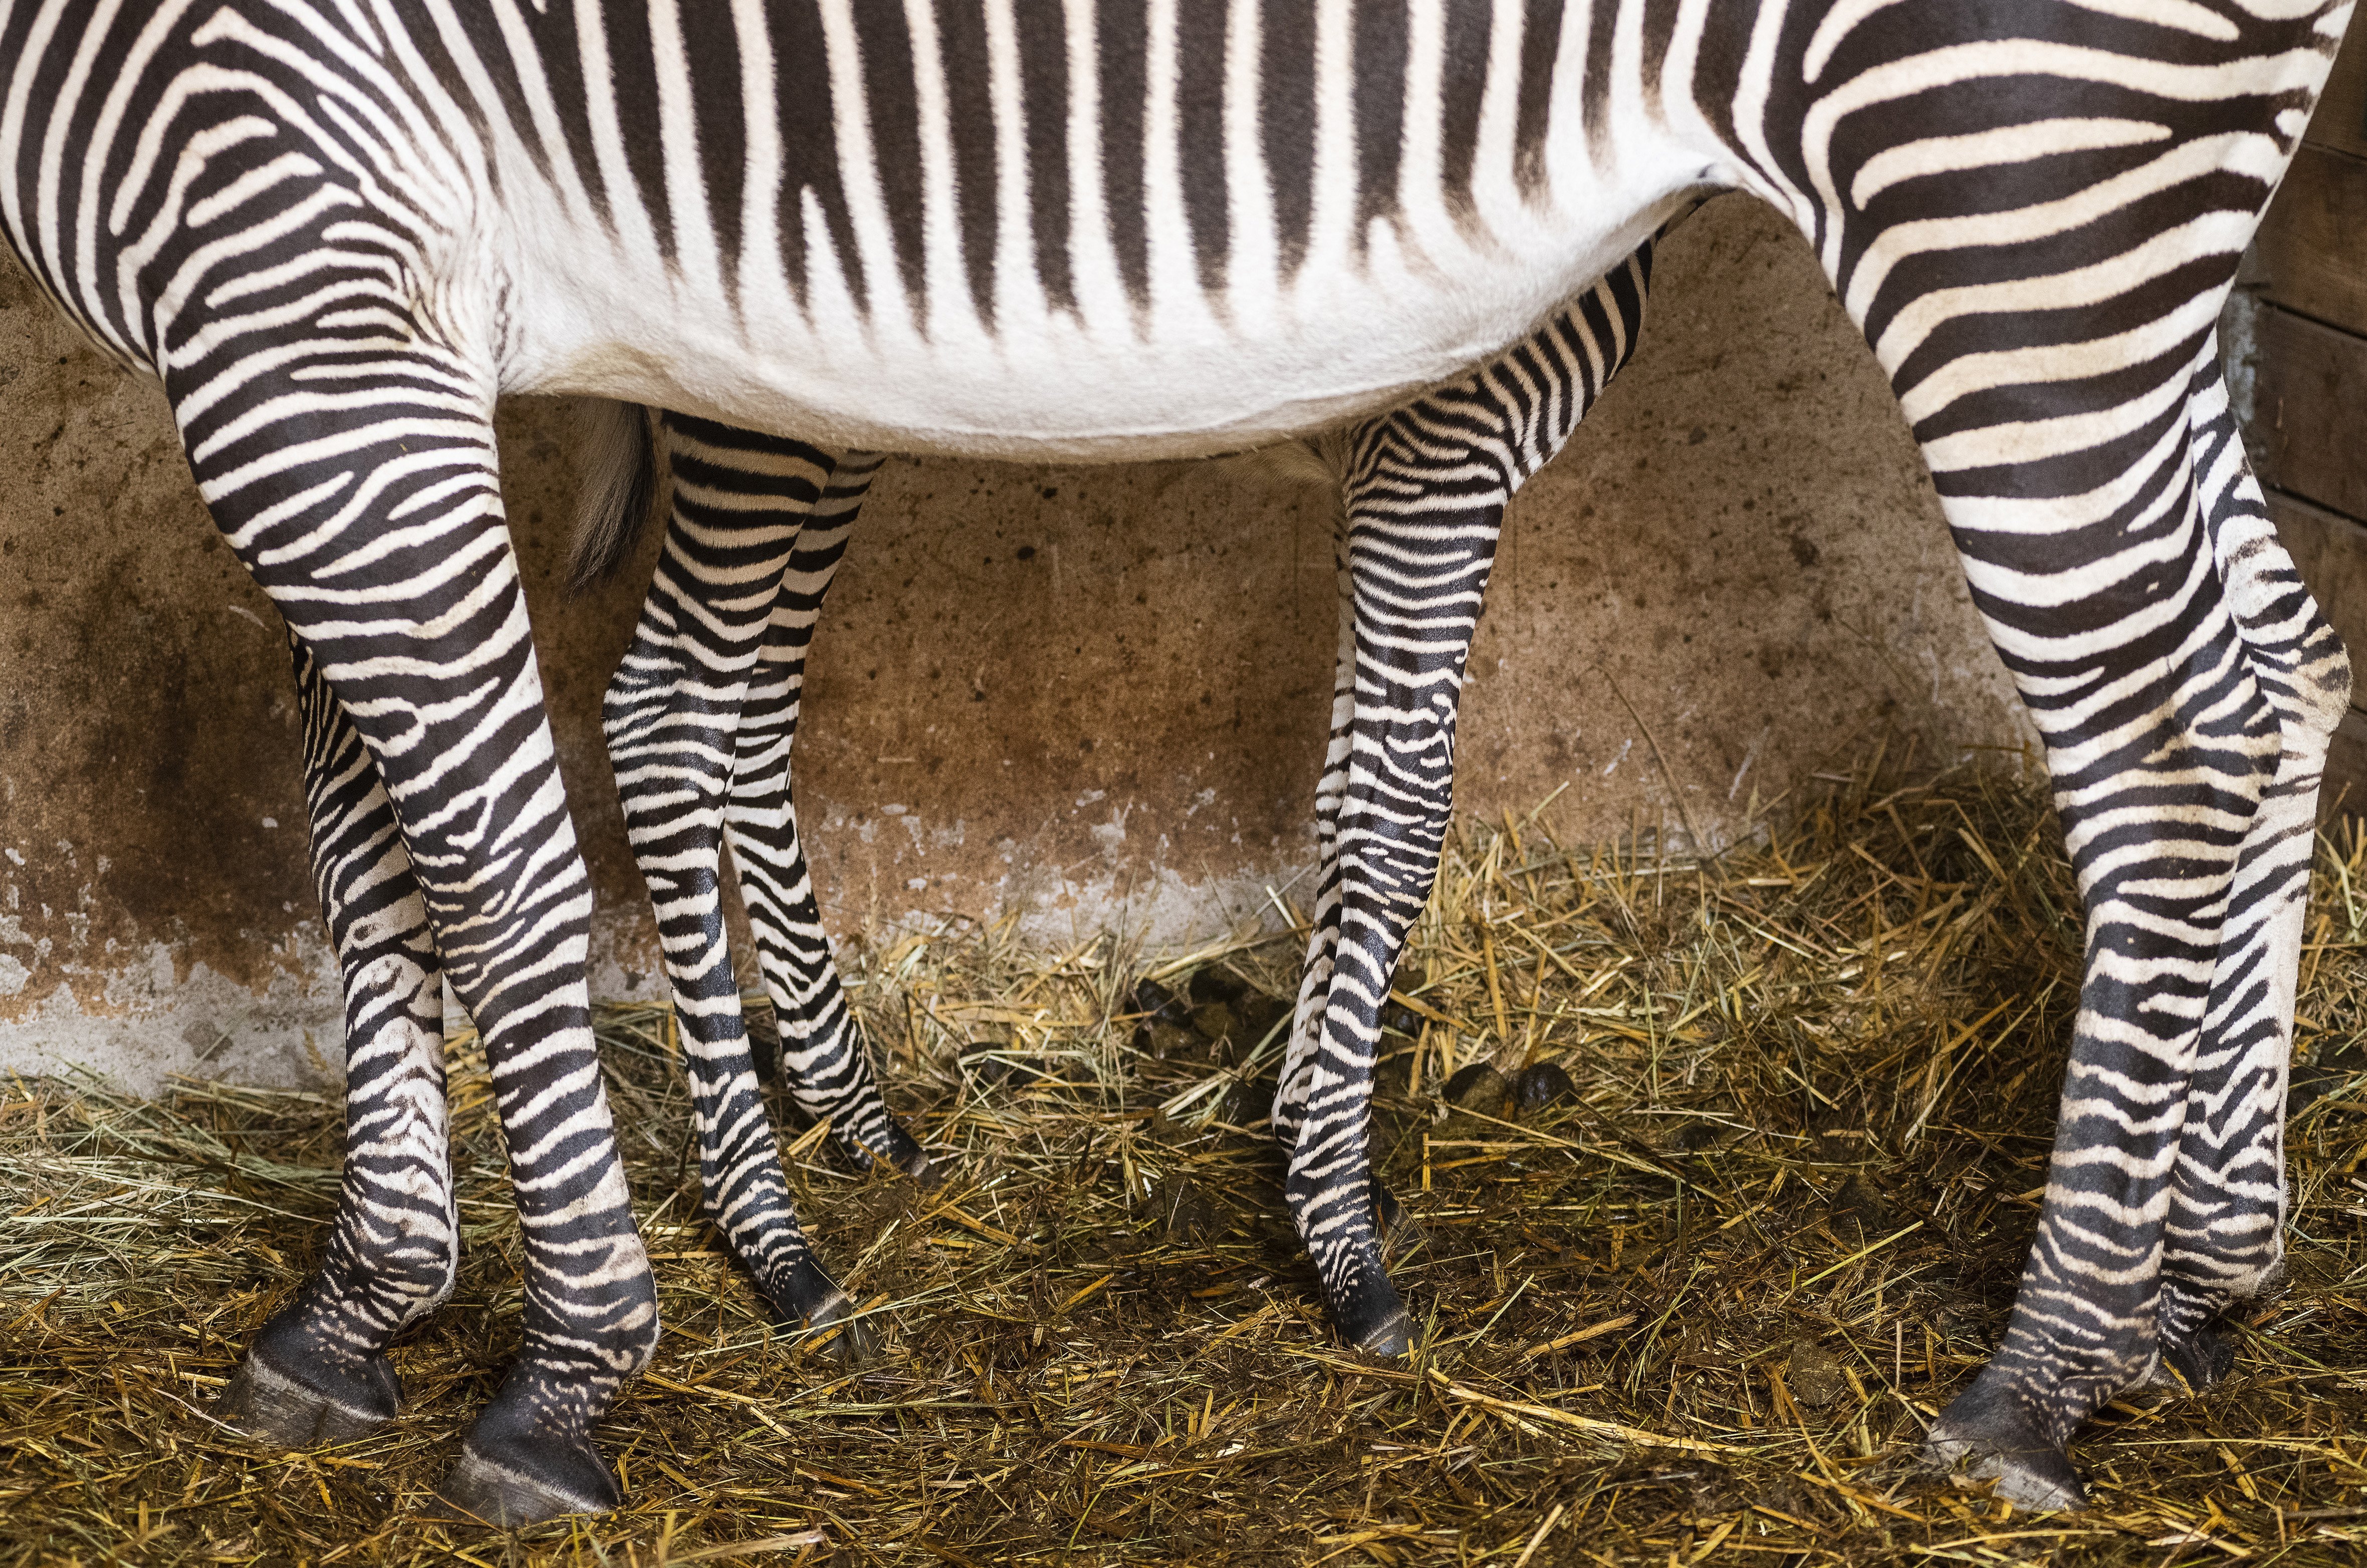 Váratlan fordulat a zebrák csíkjairól folytatott tudományos vitában